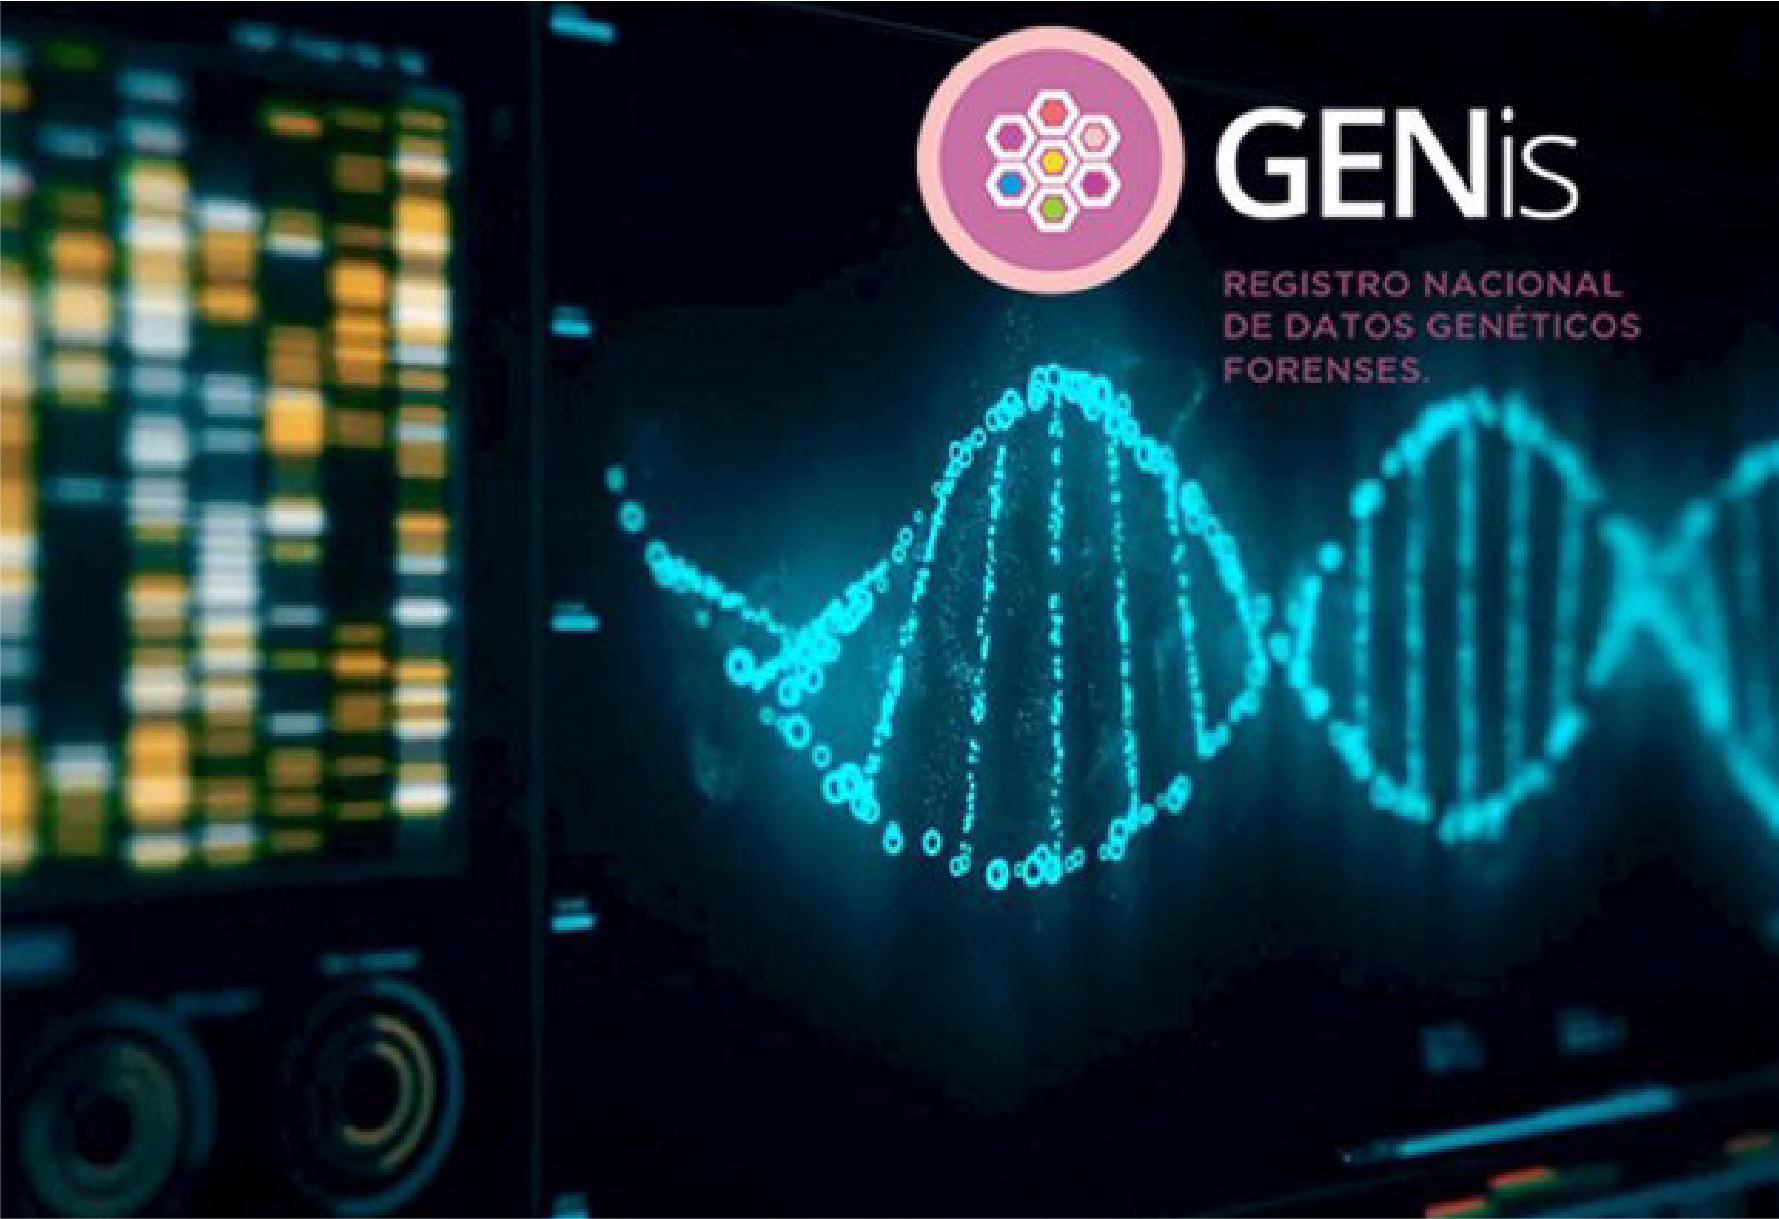 GENis, el software para registro y análisis de perfiles genéticos con fines forenses fue desarrollado íntegramente en Argentina.